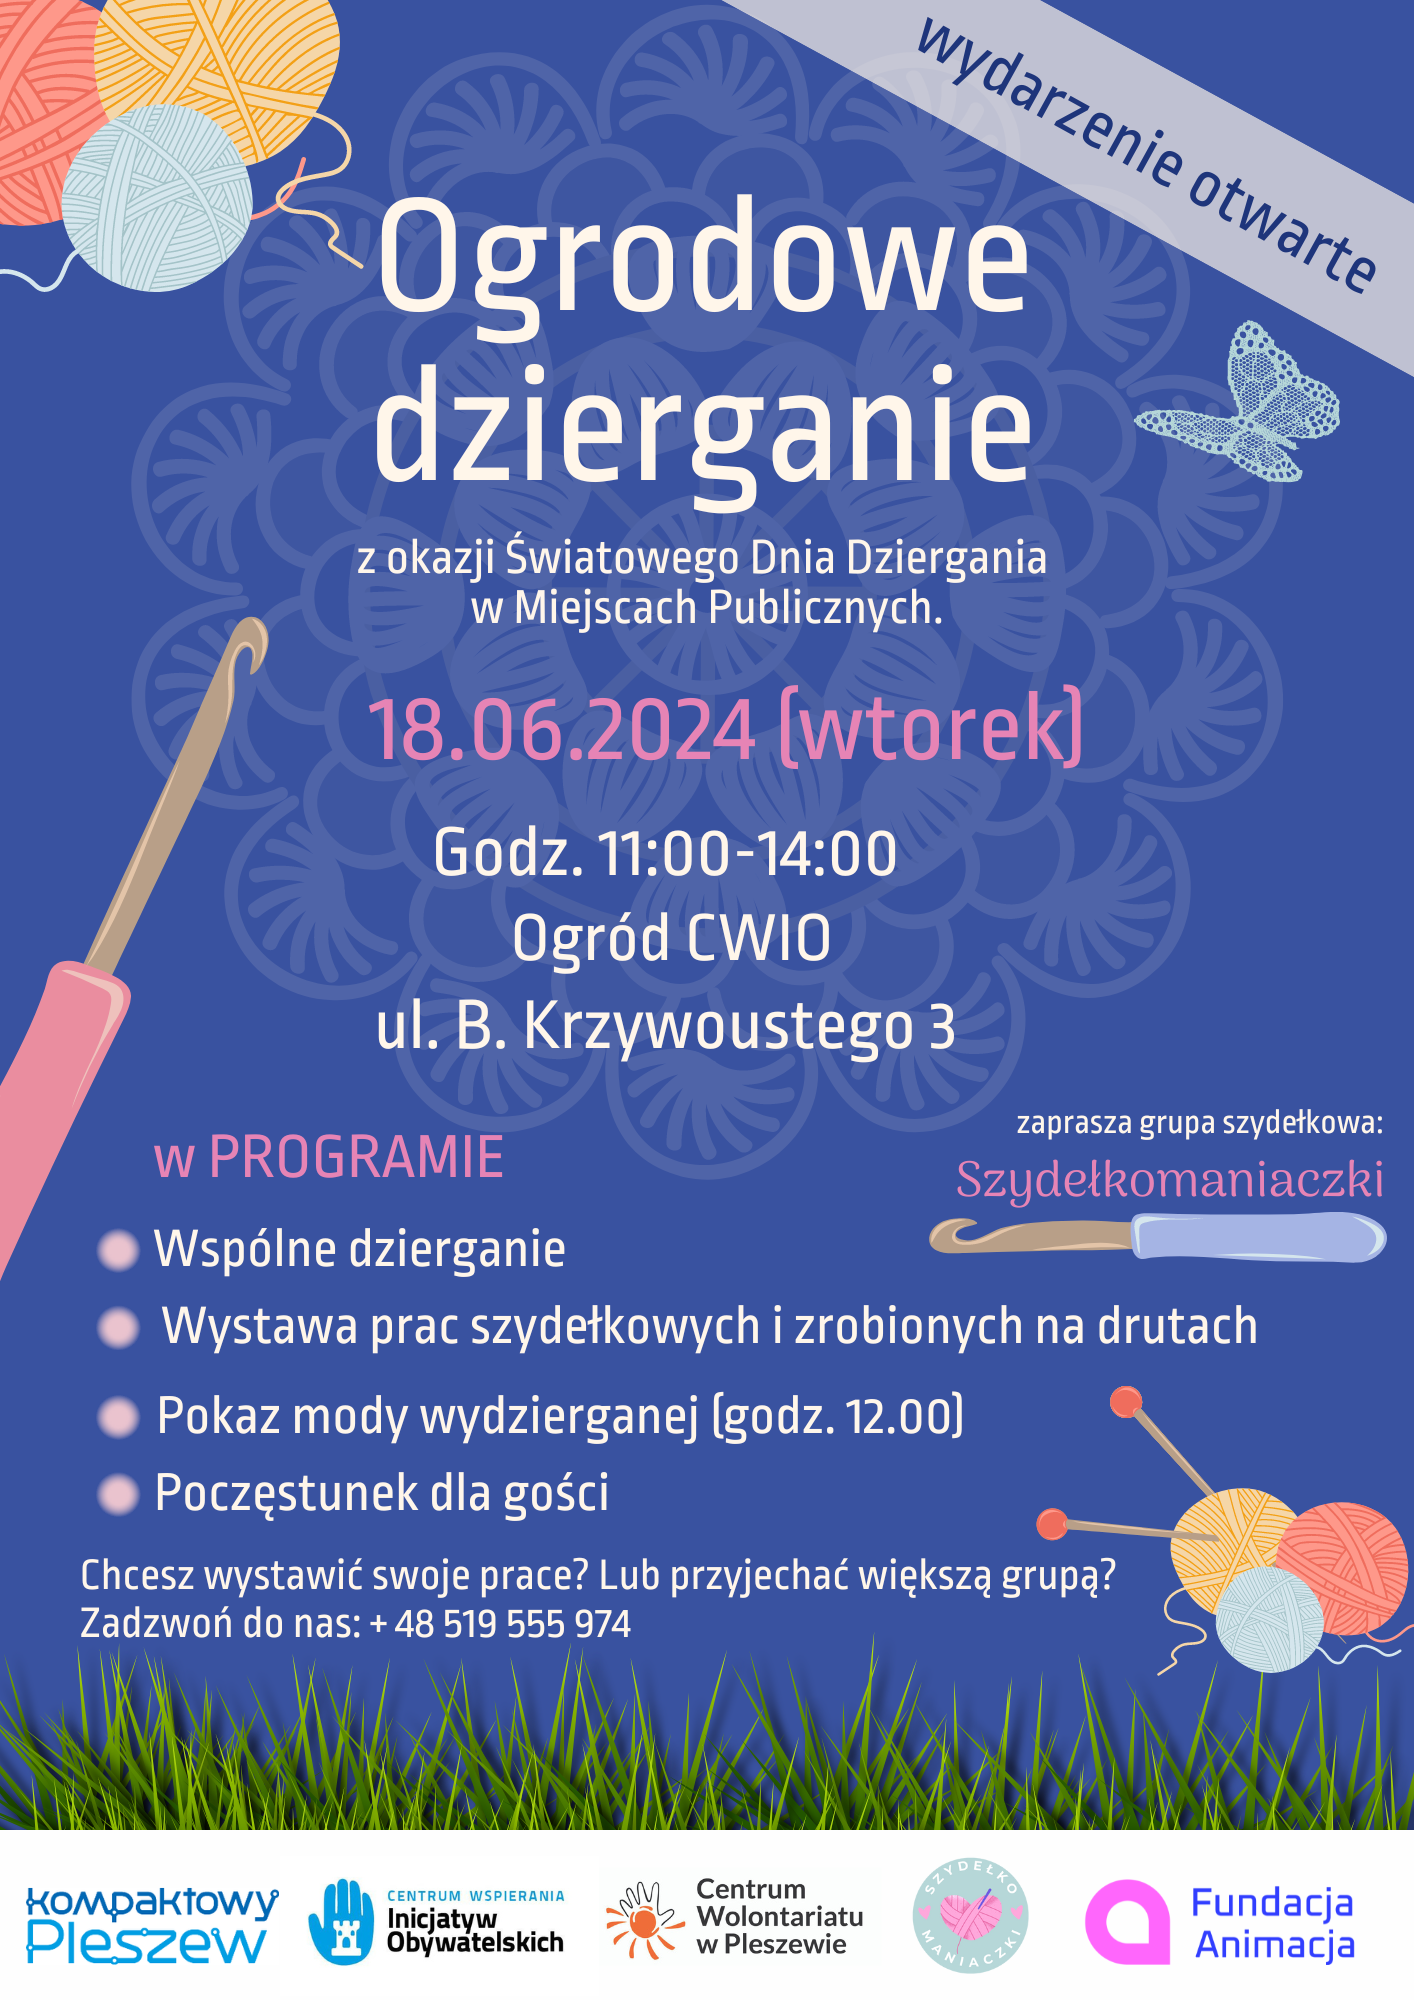 Plakat spotkania "Ogrodowe dzierganie" w Pleszewskim CWIO odbywajacego się 18 czerwca 2024 r. o godzinie 11:00.